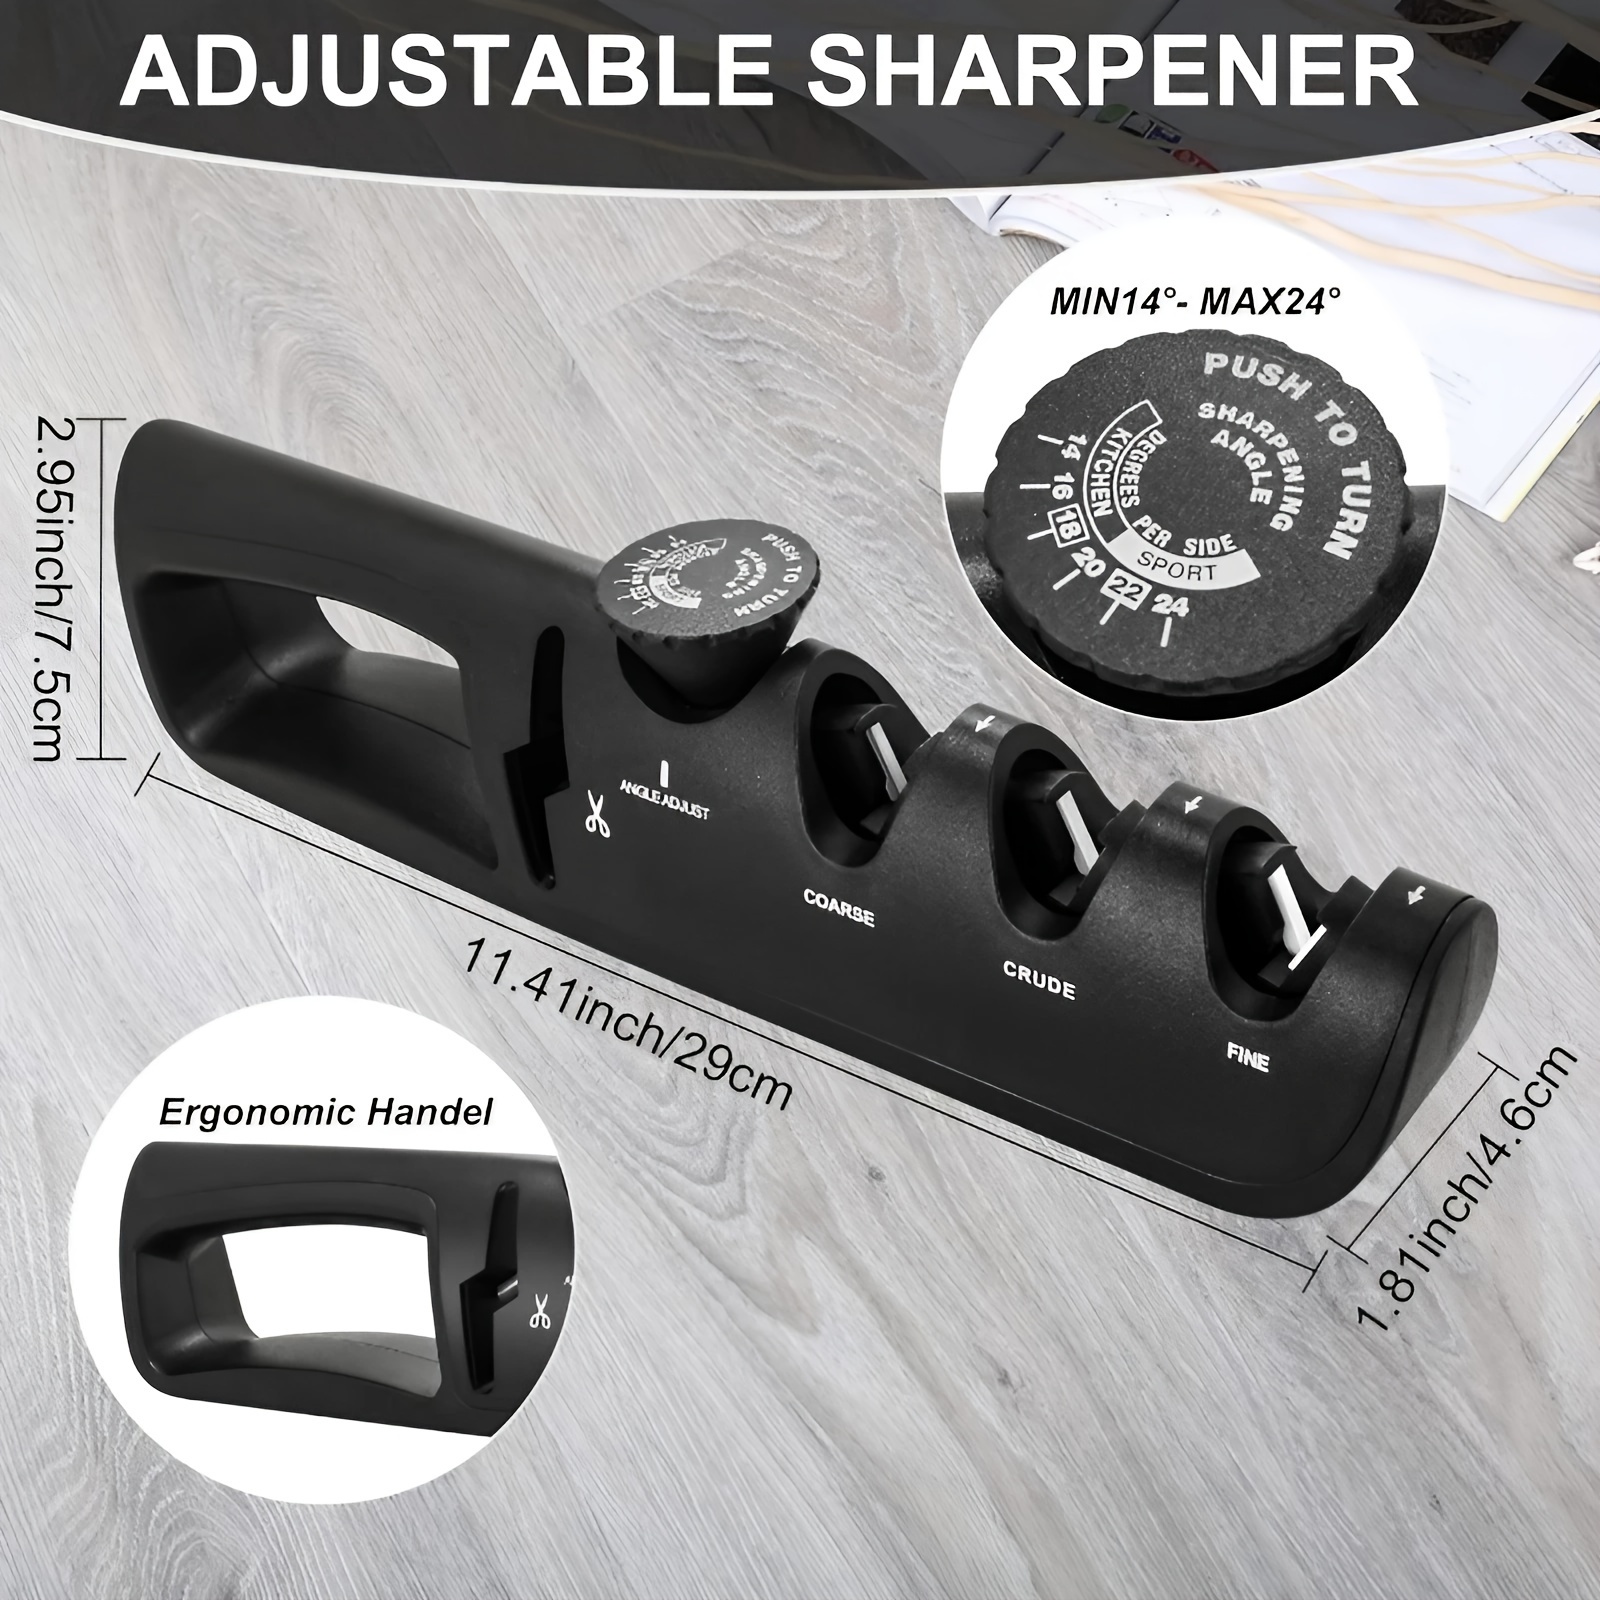 Scissor Sharpener, 1 pc